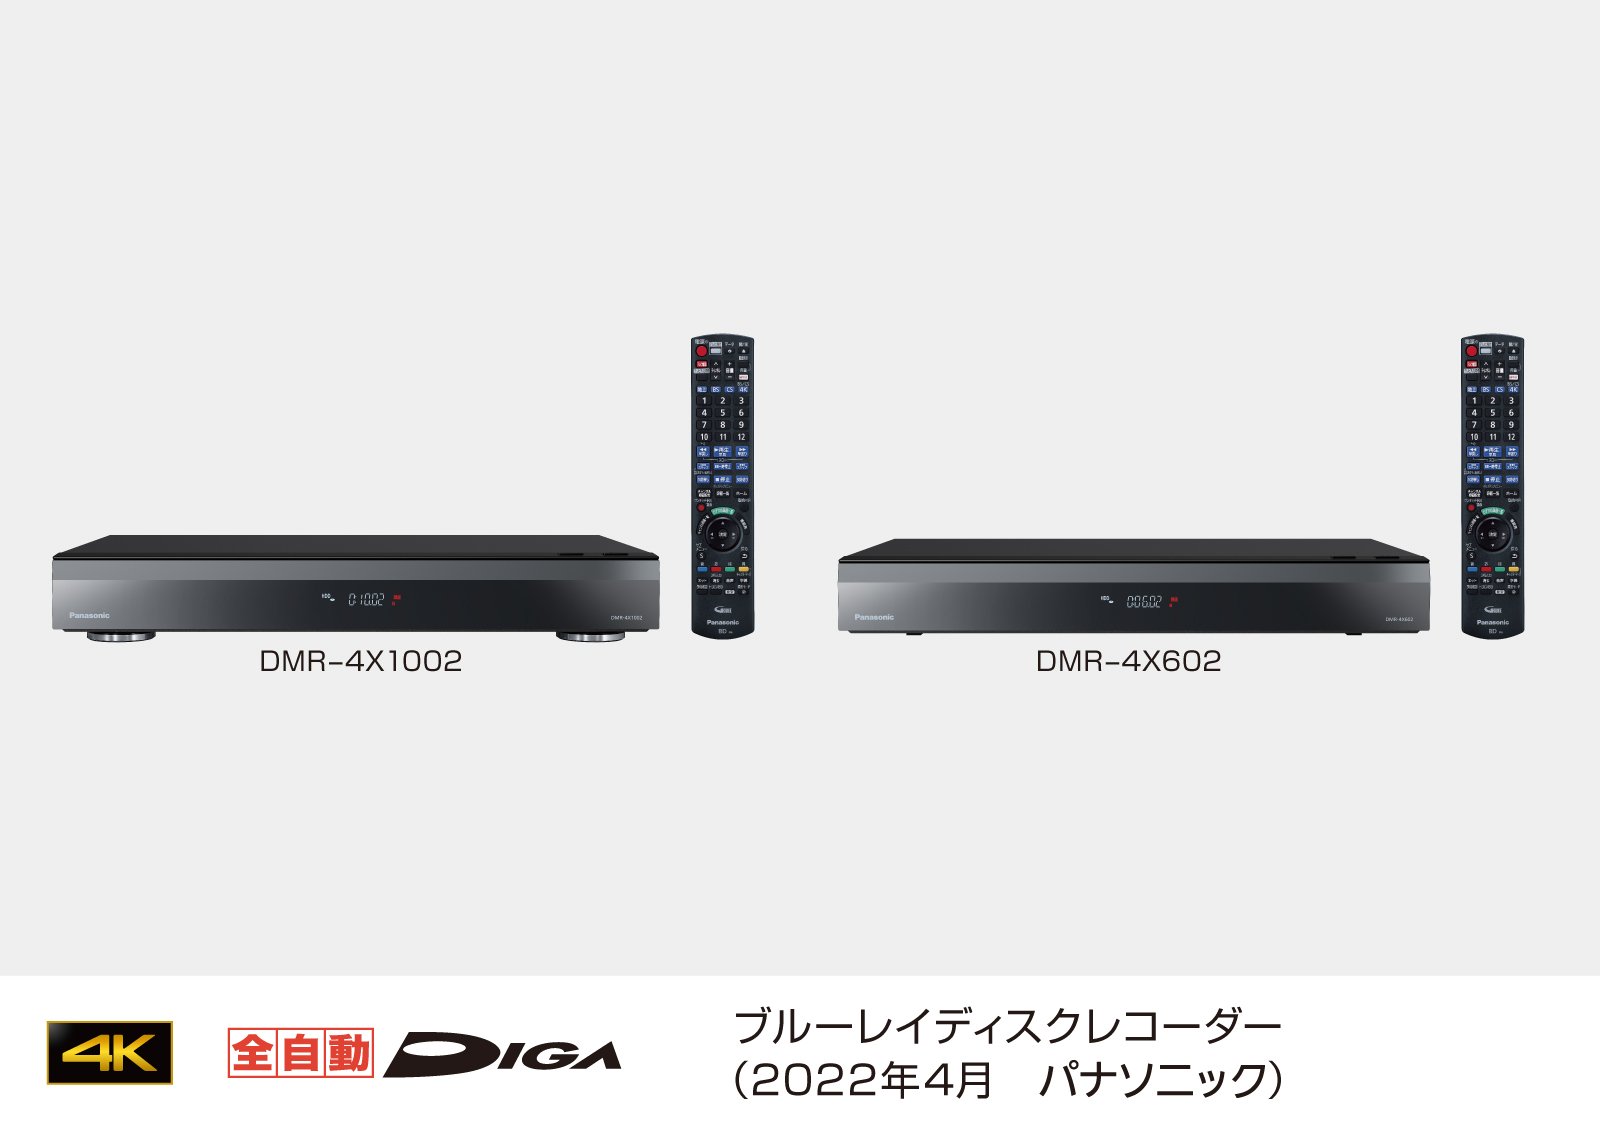 テレビ/映像機器 その他 ブルーレイディスクレコーダー新製品4Kチューナー内蔵 全自動ディーガ 